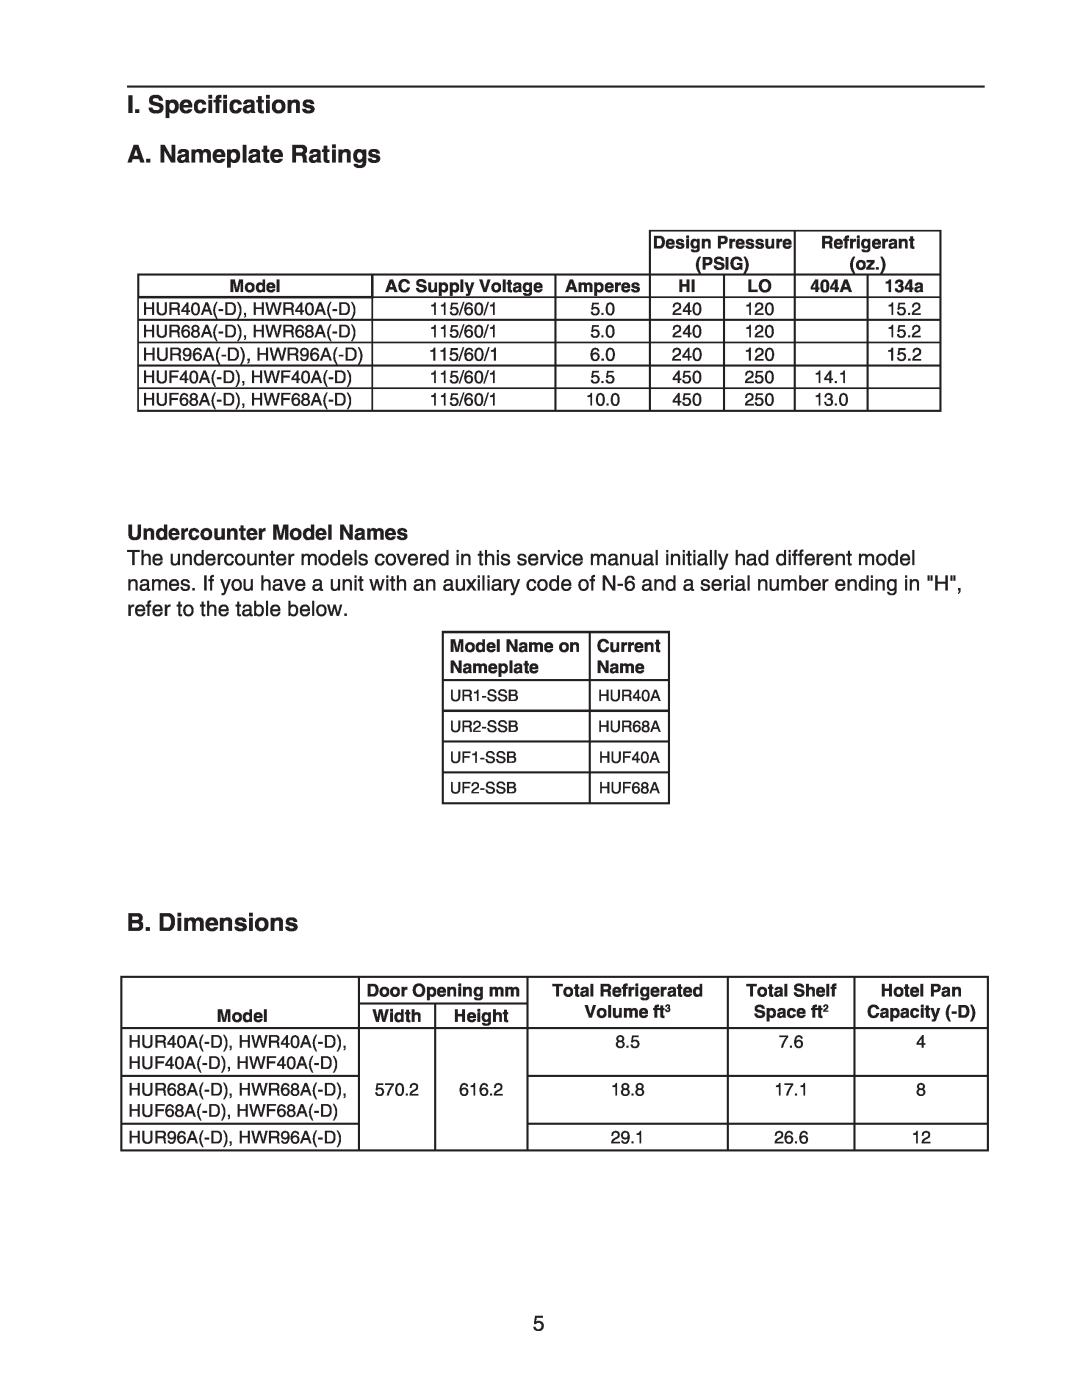 Hoshizaki HWR40A(-D) I. Specifications A. Nameplate Ratings, B. Dimensions, Undercounter Model Names, HUR96A-D, HWR96A-D 